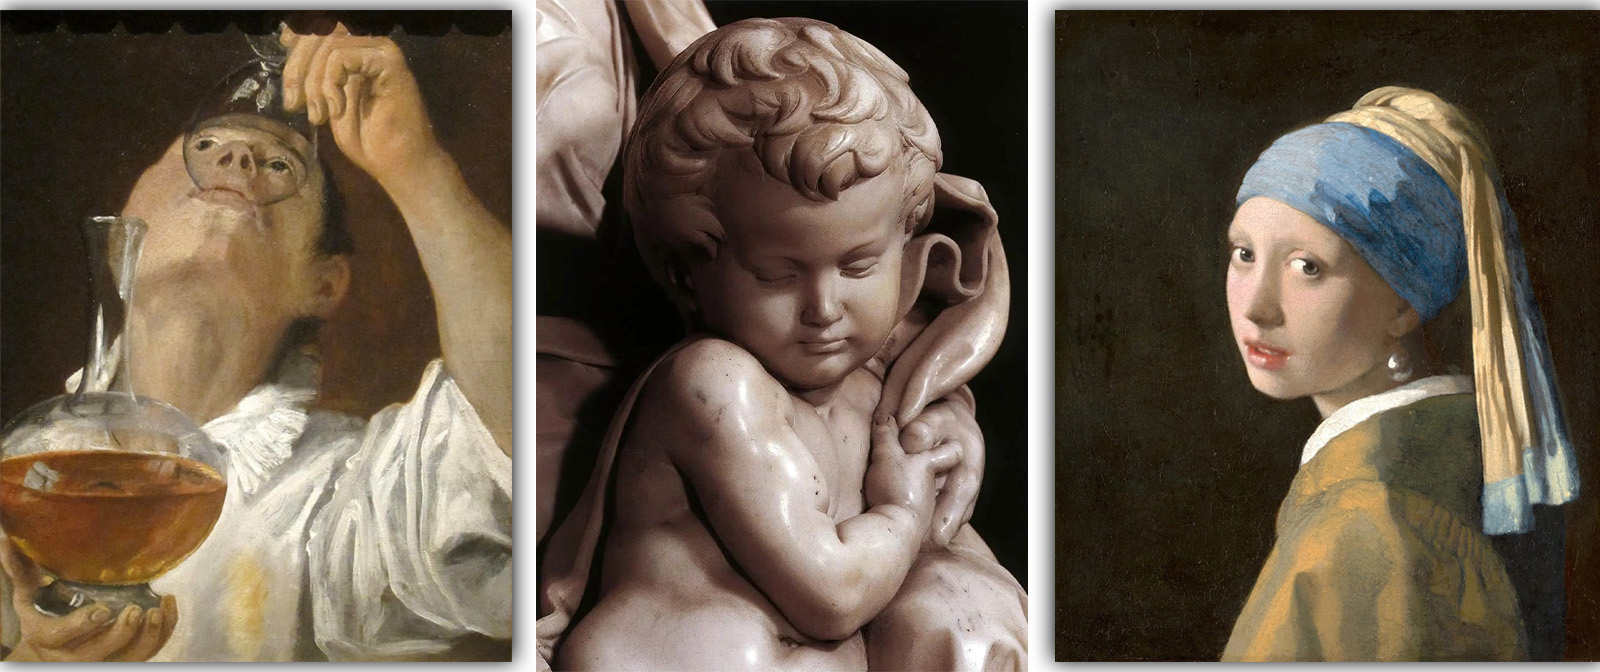 Зачем Микеланджело создавал фальшивые статуи и картины? О мастерах фальшивок в живописи